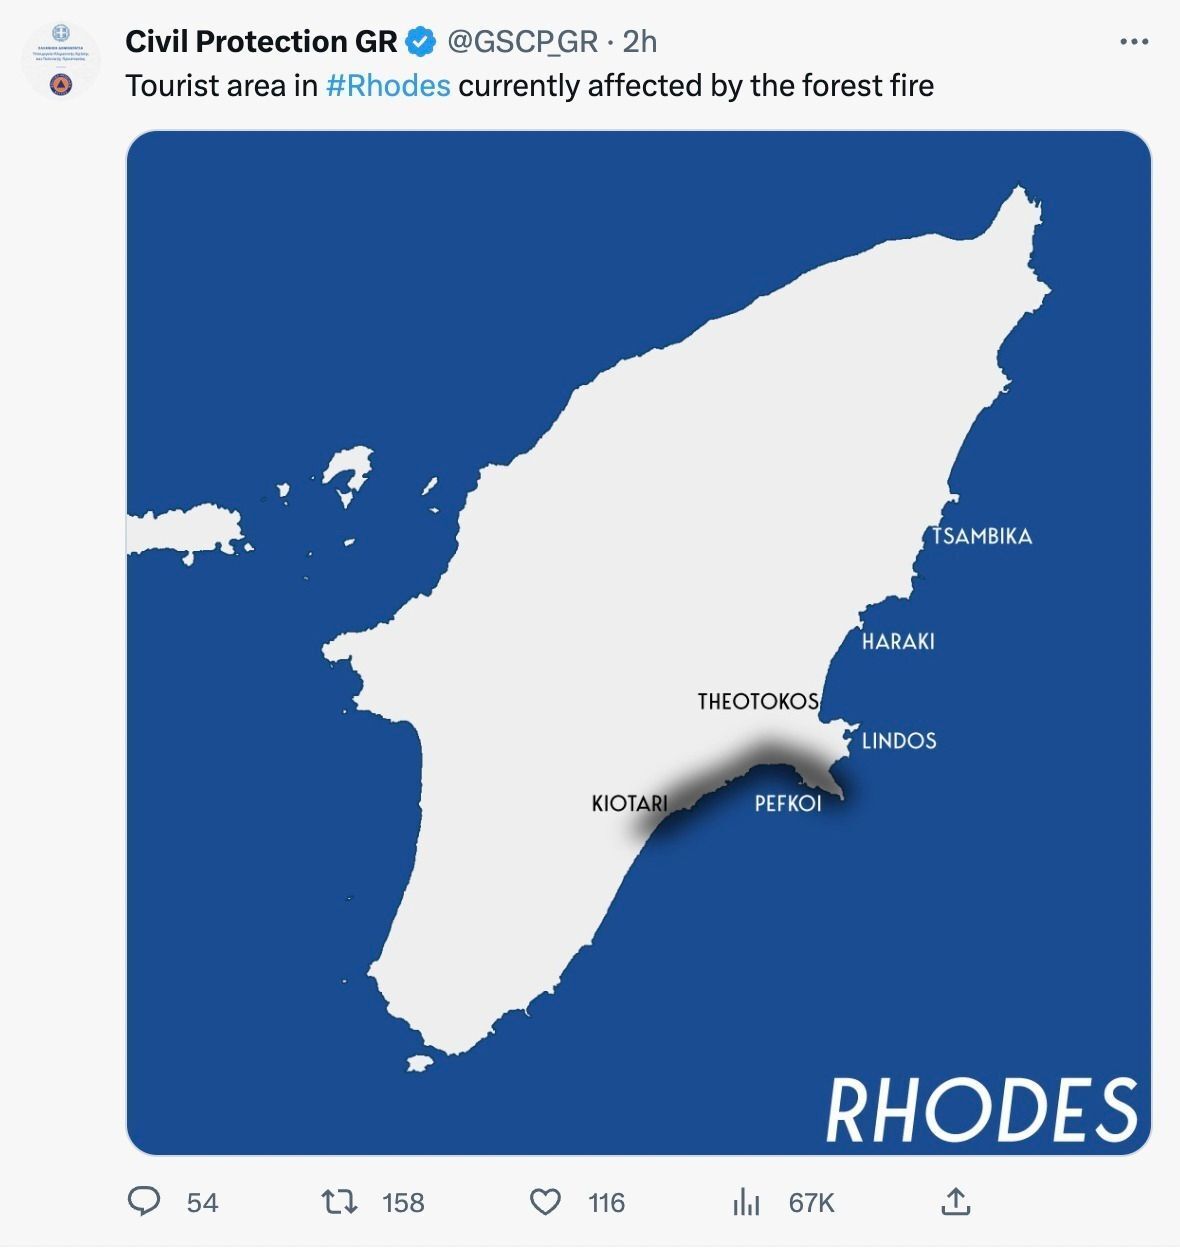 Rhodes Wildfire